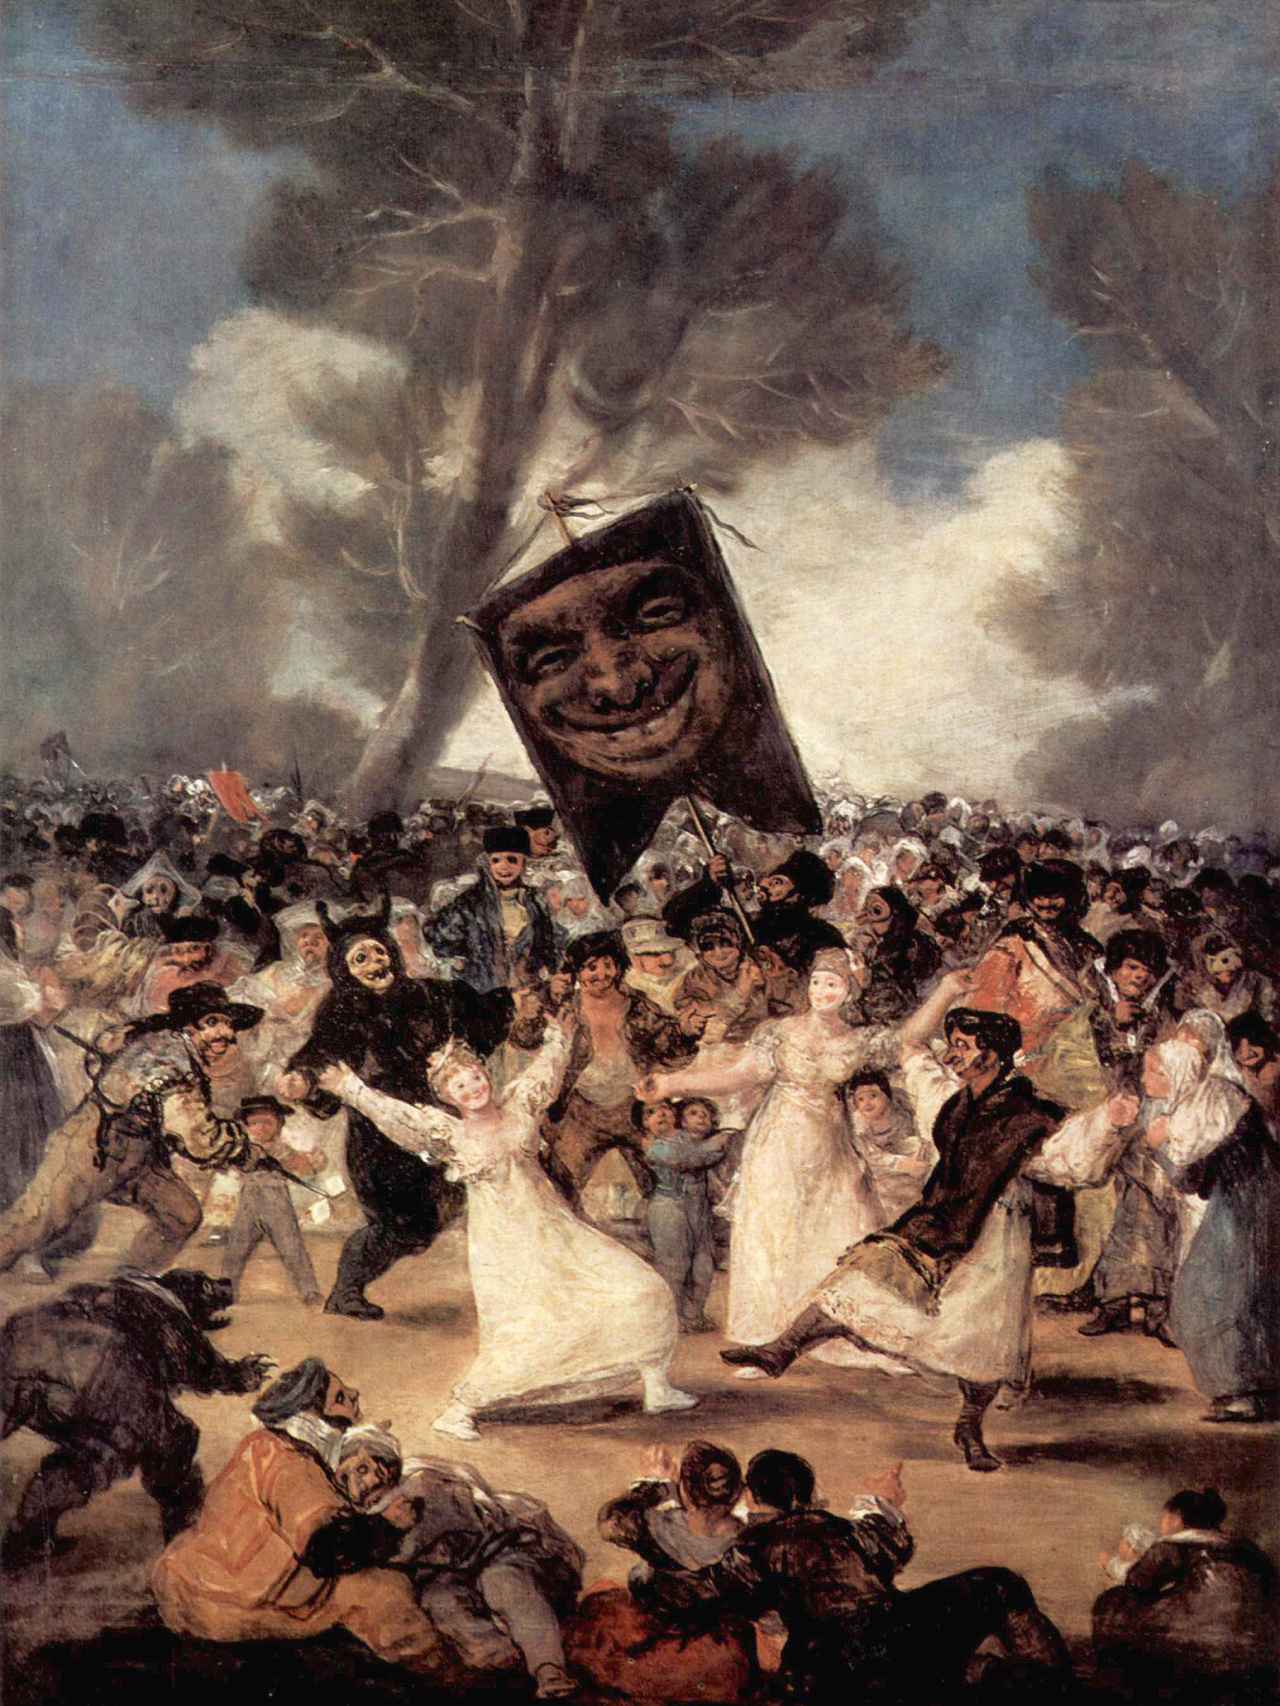 El entierro de la sardina. Francisco de Goya. Museo del Padro.